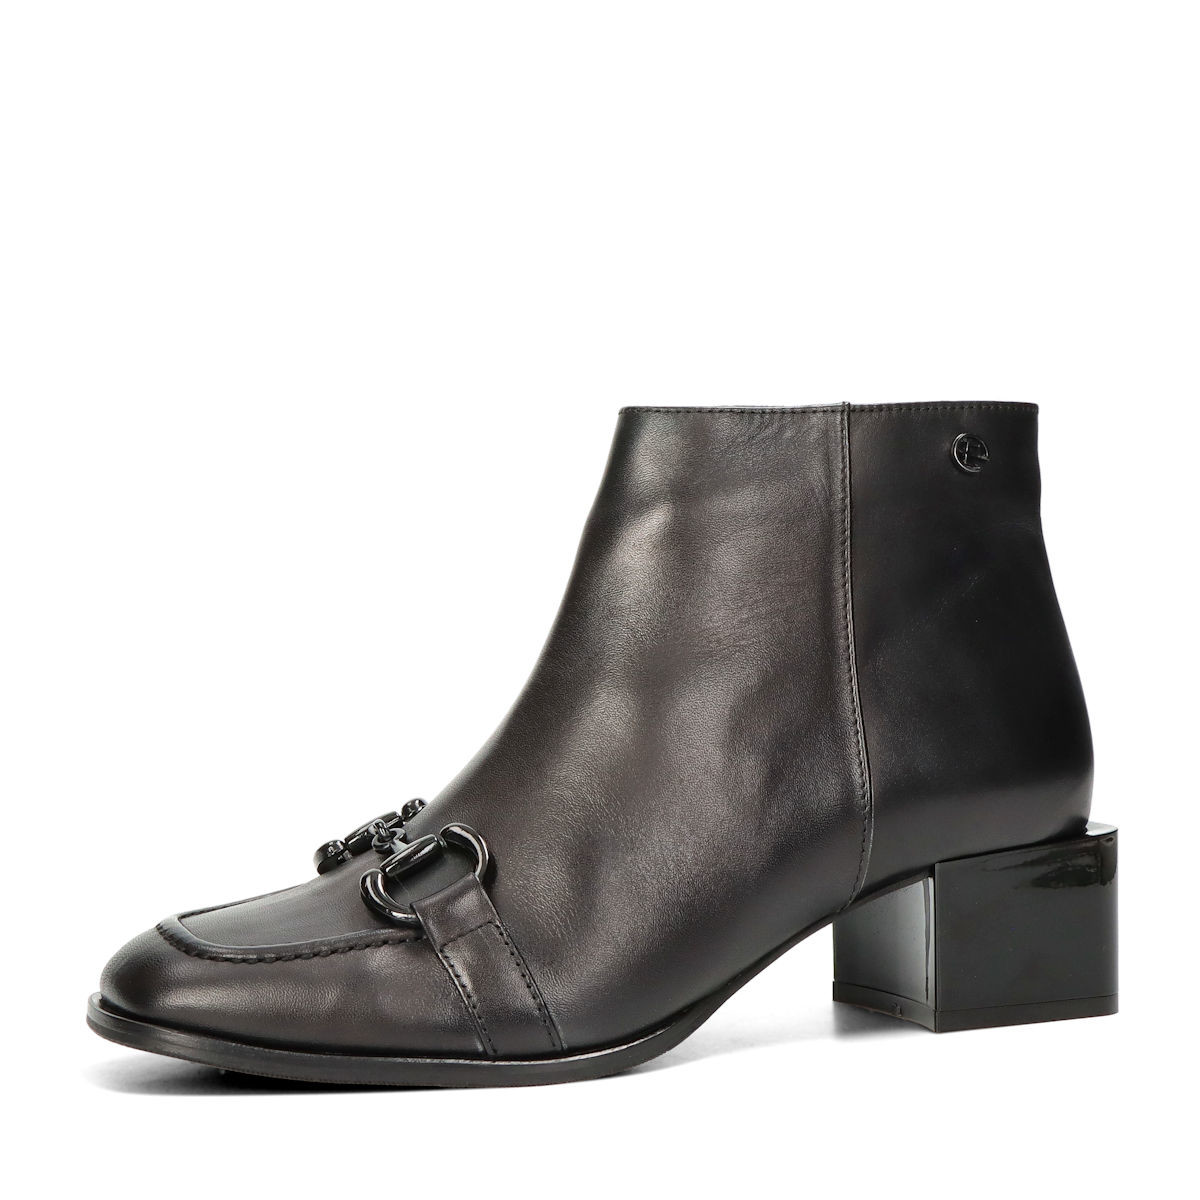 ETIMEĒ dámské elegantní kotníkové boty - černé - 36